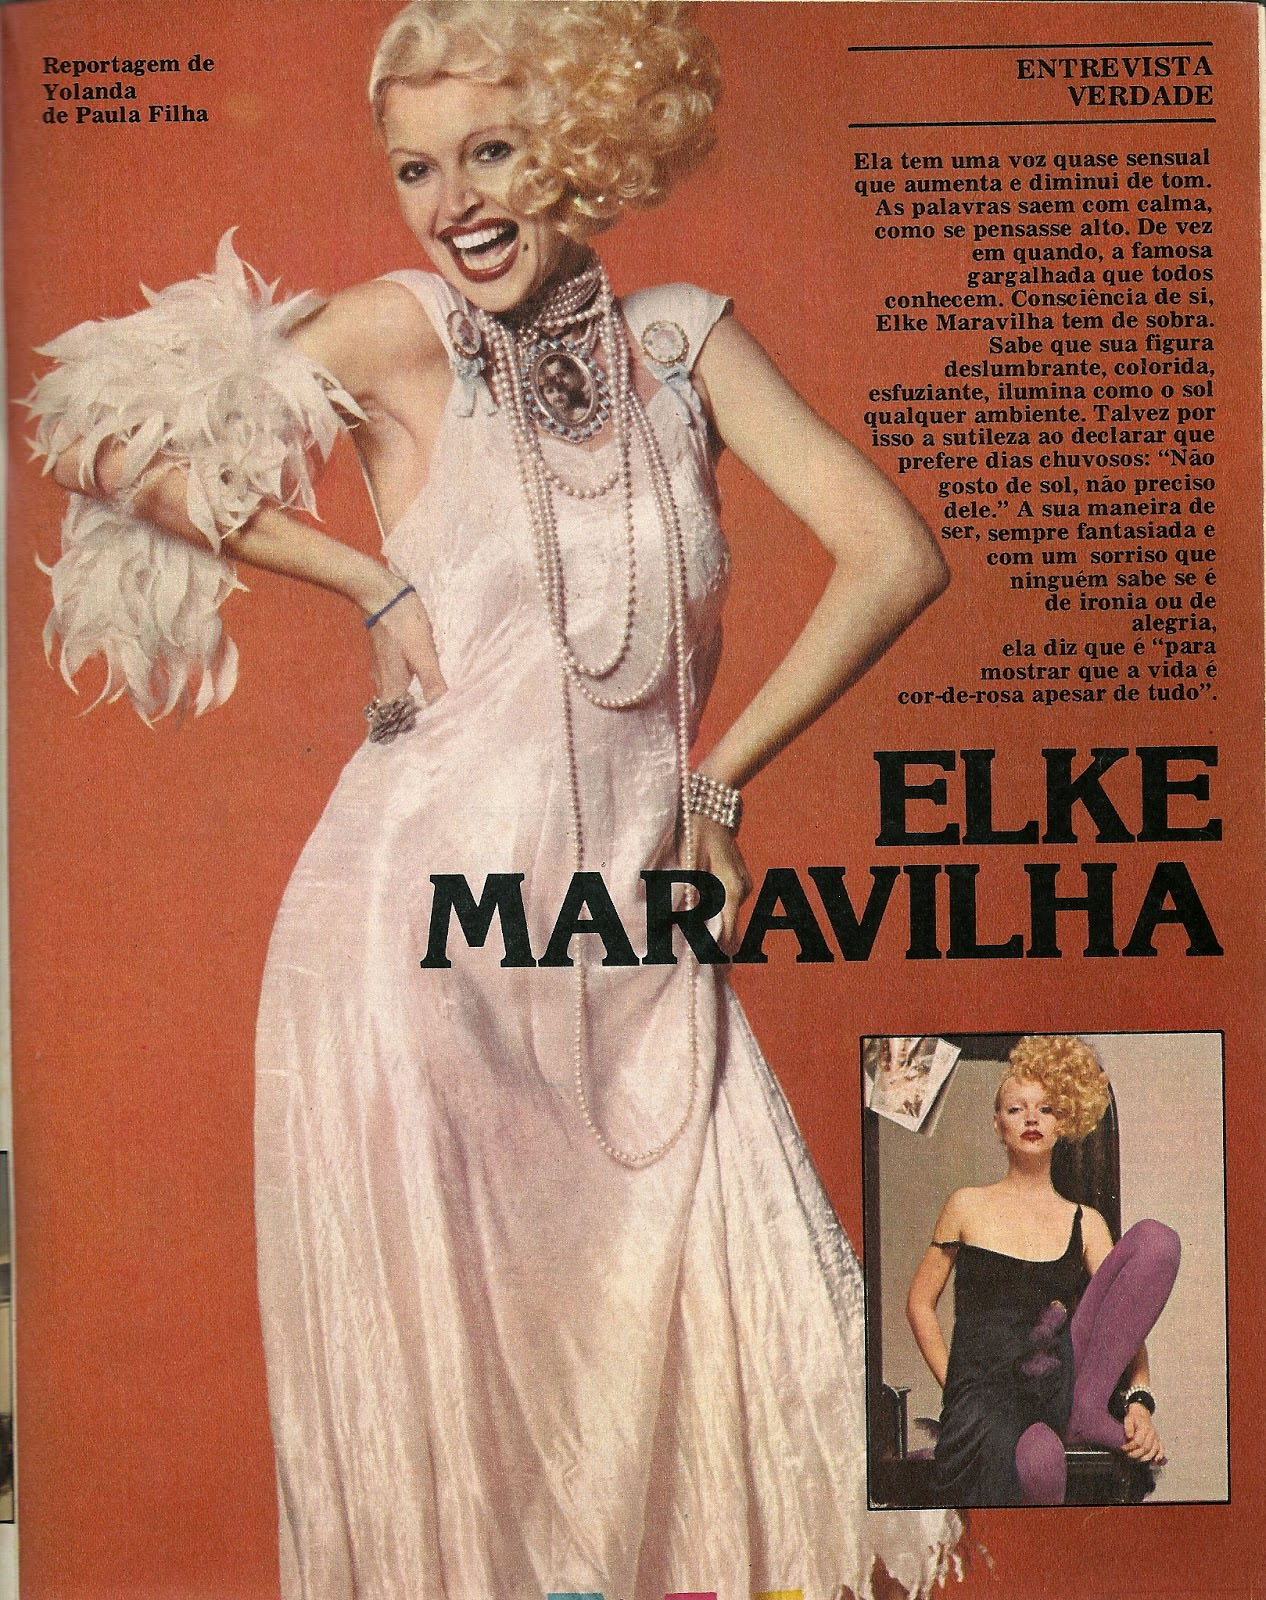 O charme de Elke na revista Amiga, em 1979